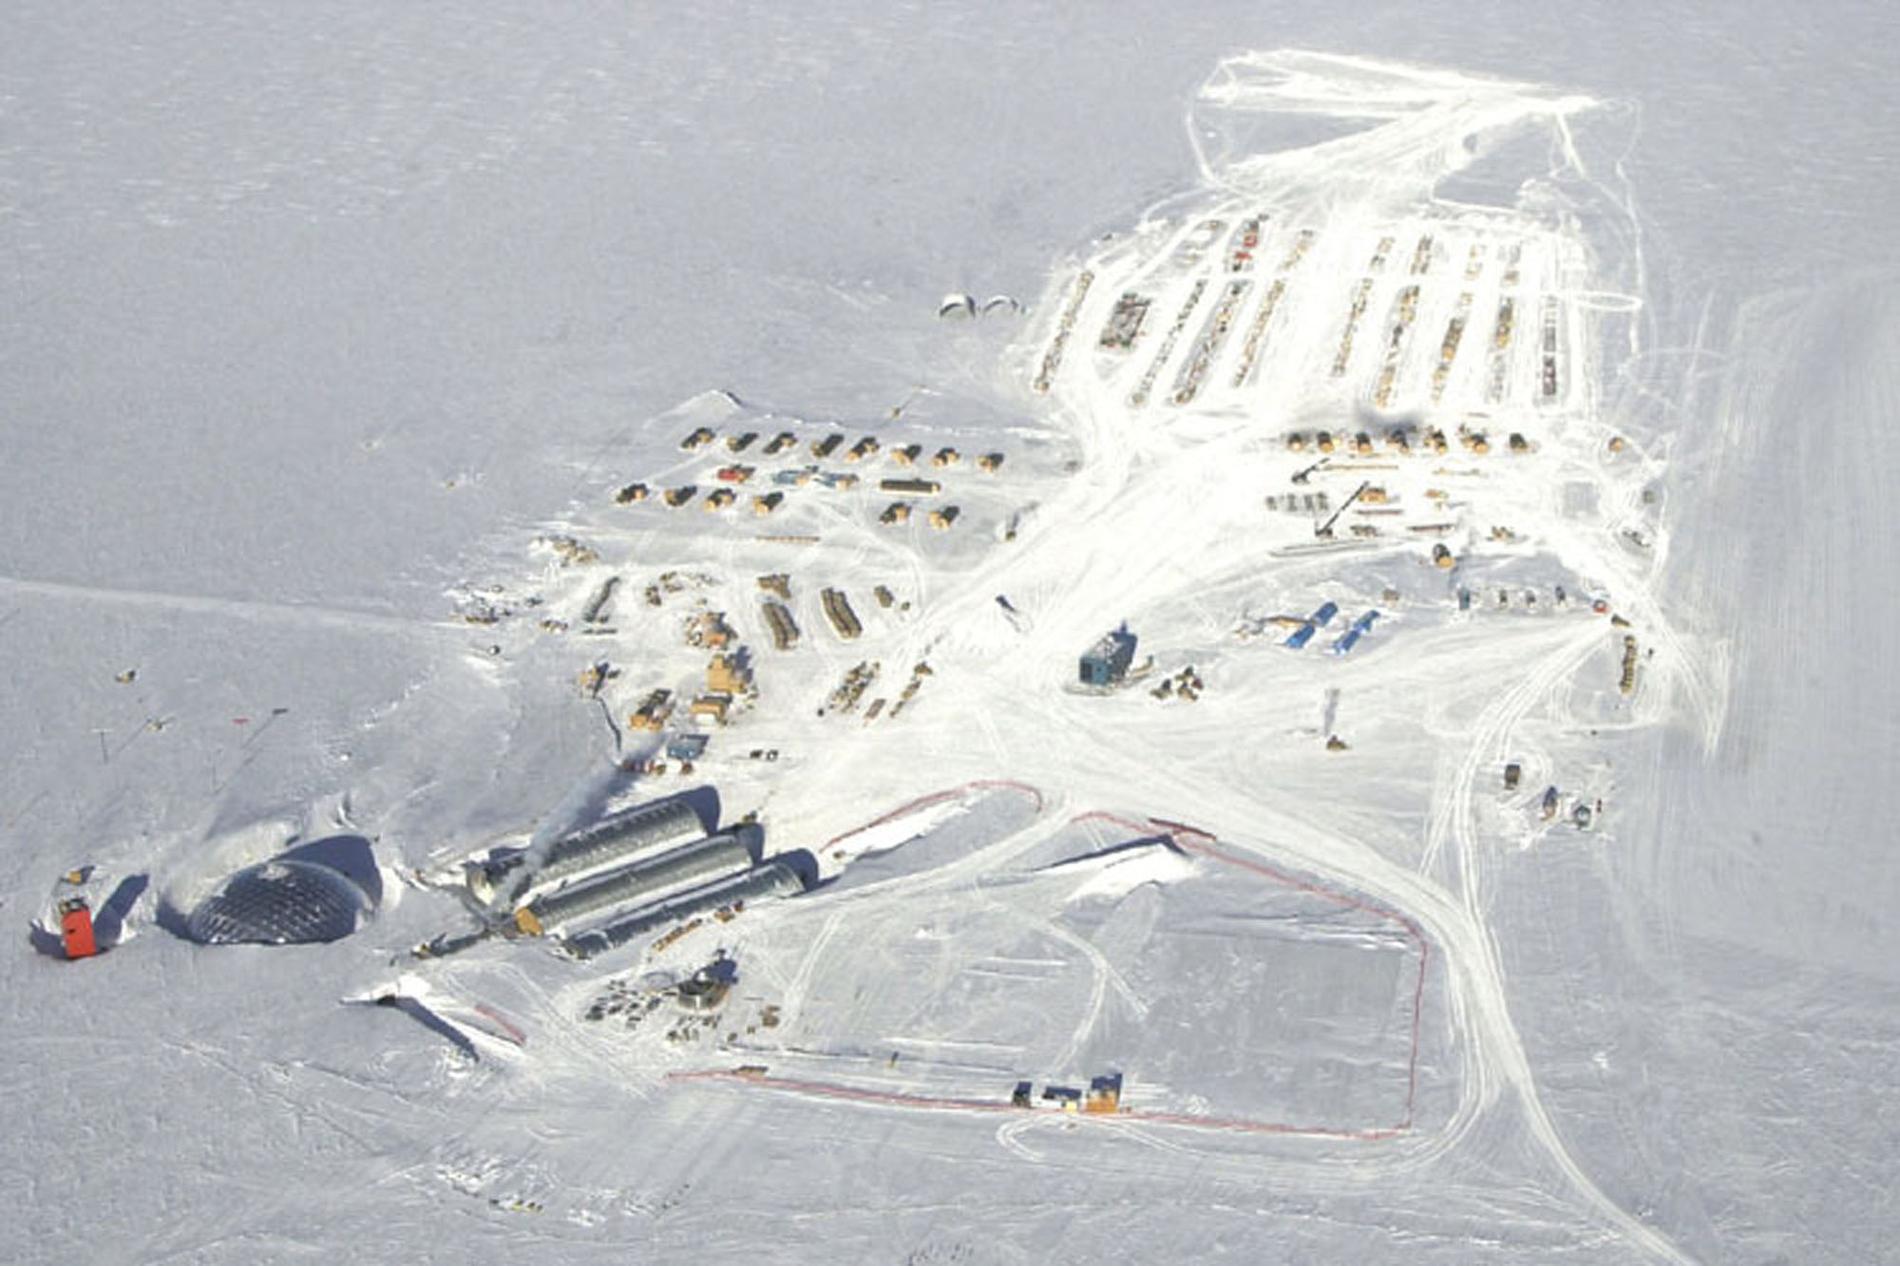 Forskarna hoppas att rymdstudien kan vara till nytta för andra otillgängliga arbetsplatser, som exempelvis polarbasen Amundsen-Scott på Antarktis. Arkivbild.